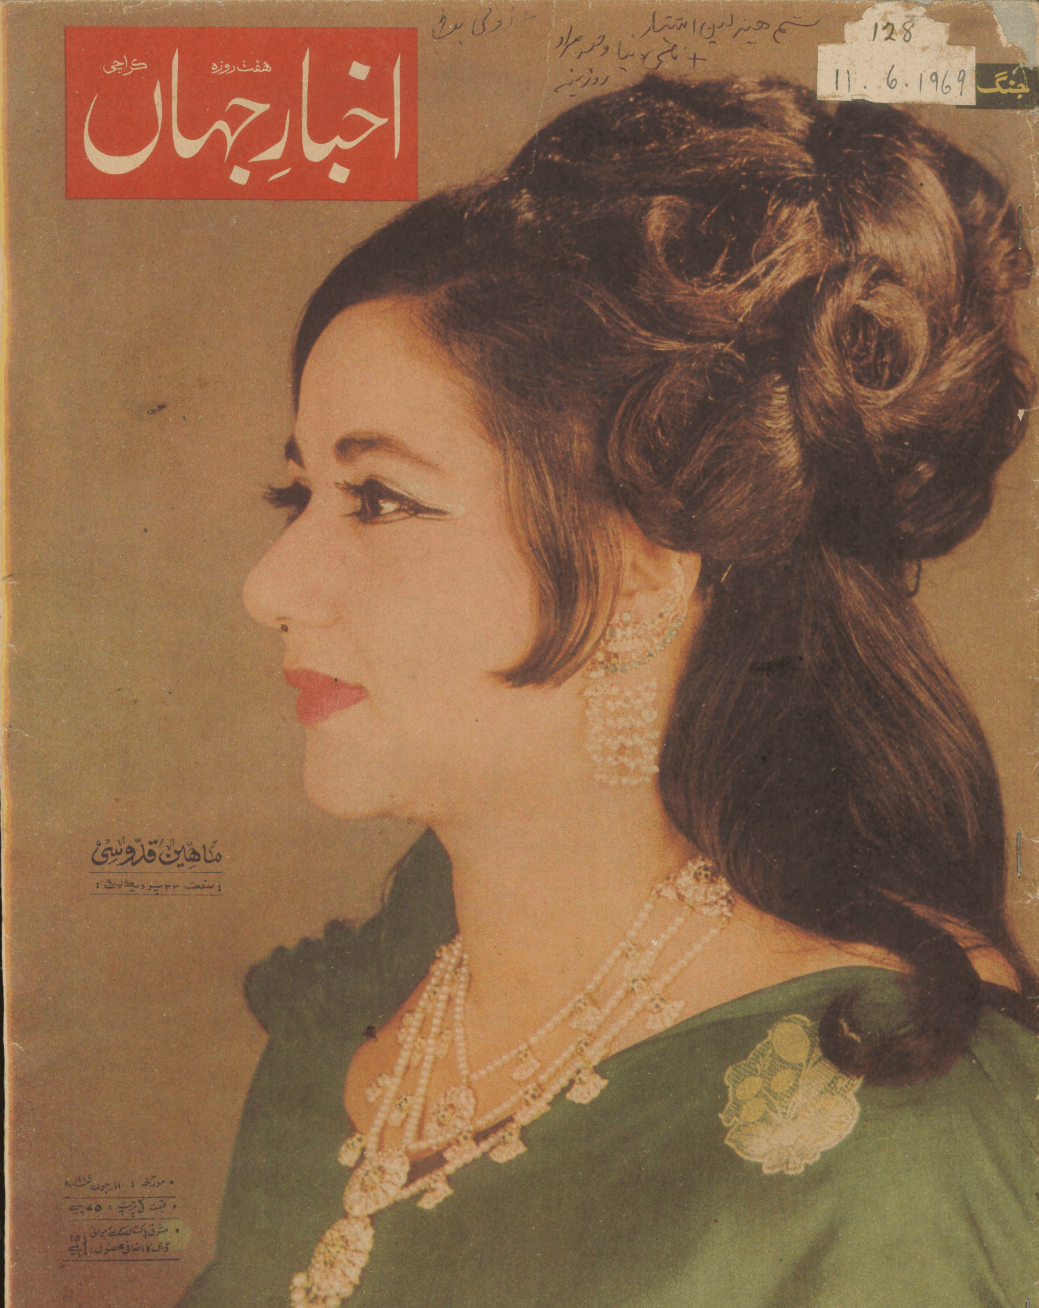 Akhbar-e-Jahan (June 11, 1969) - KHAJISTAN™